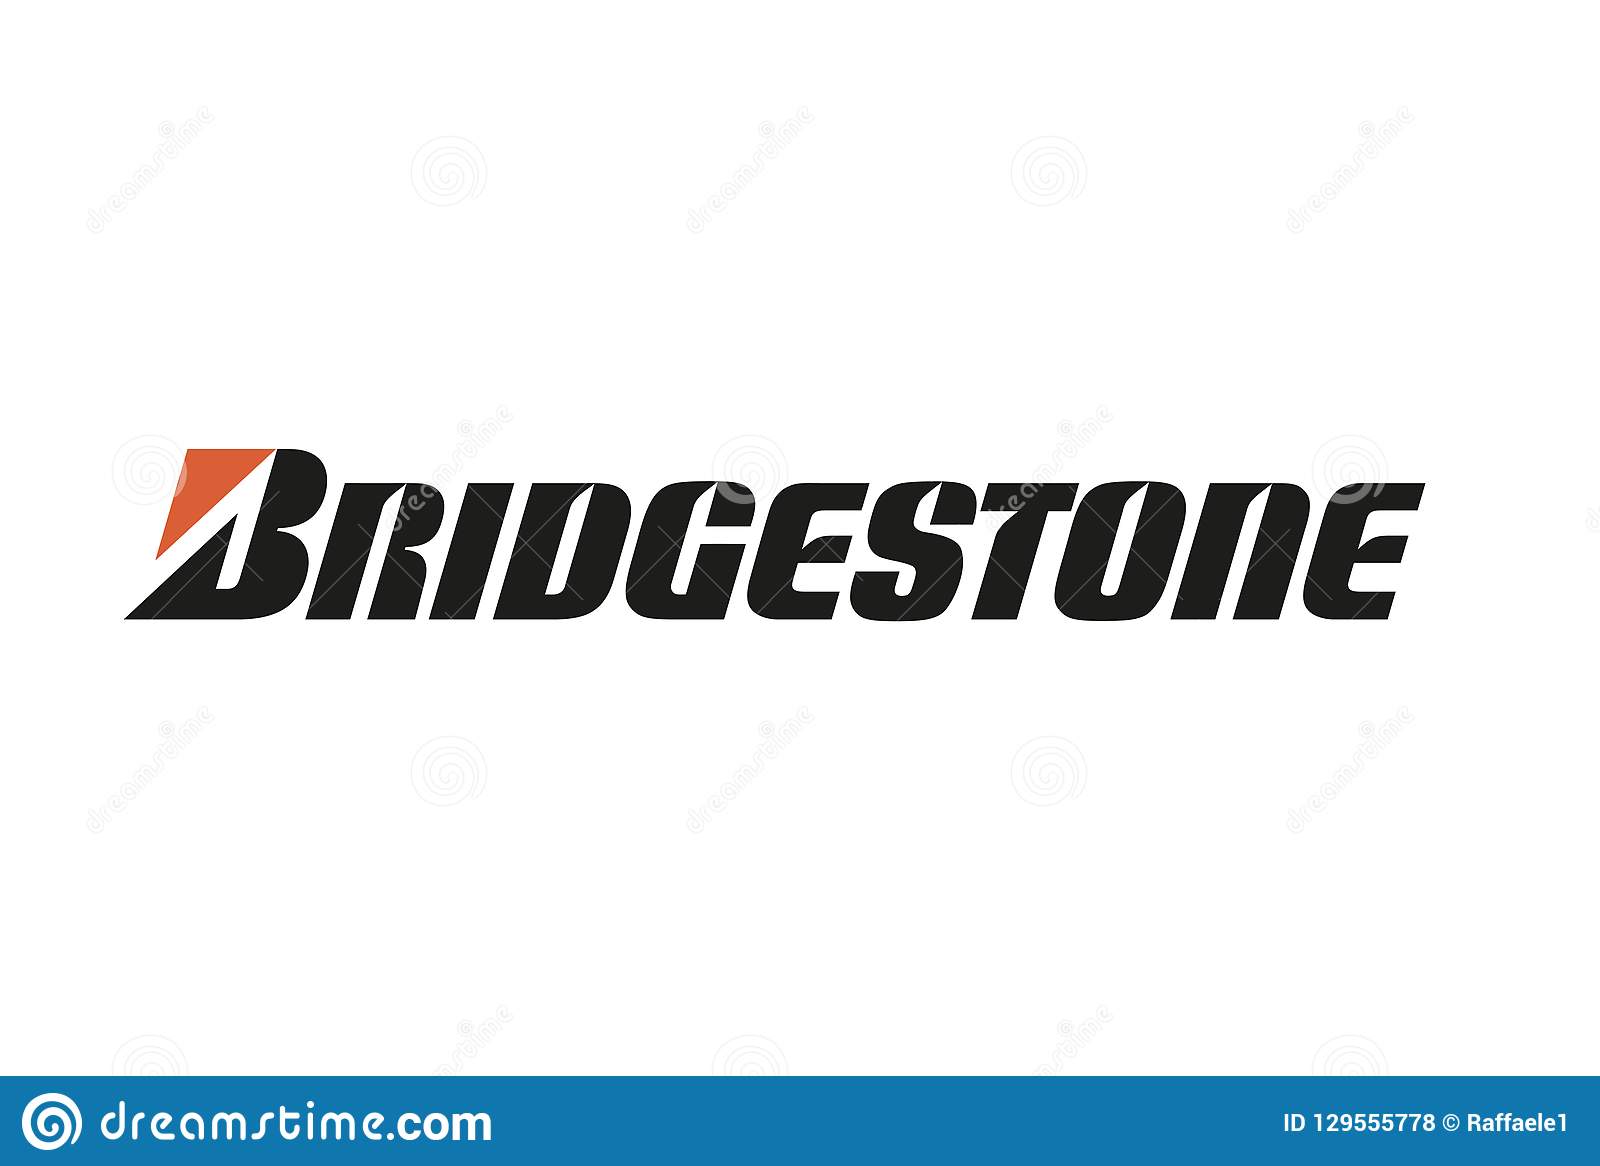 Bridgestone, 업데이트된 로고 공개